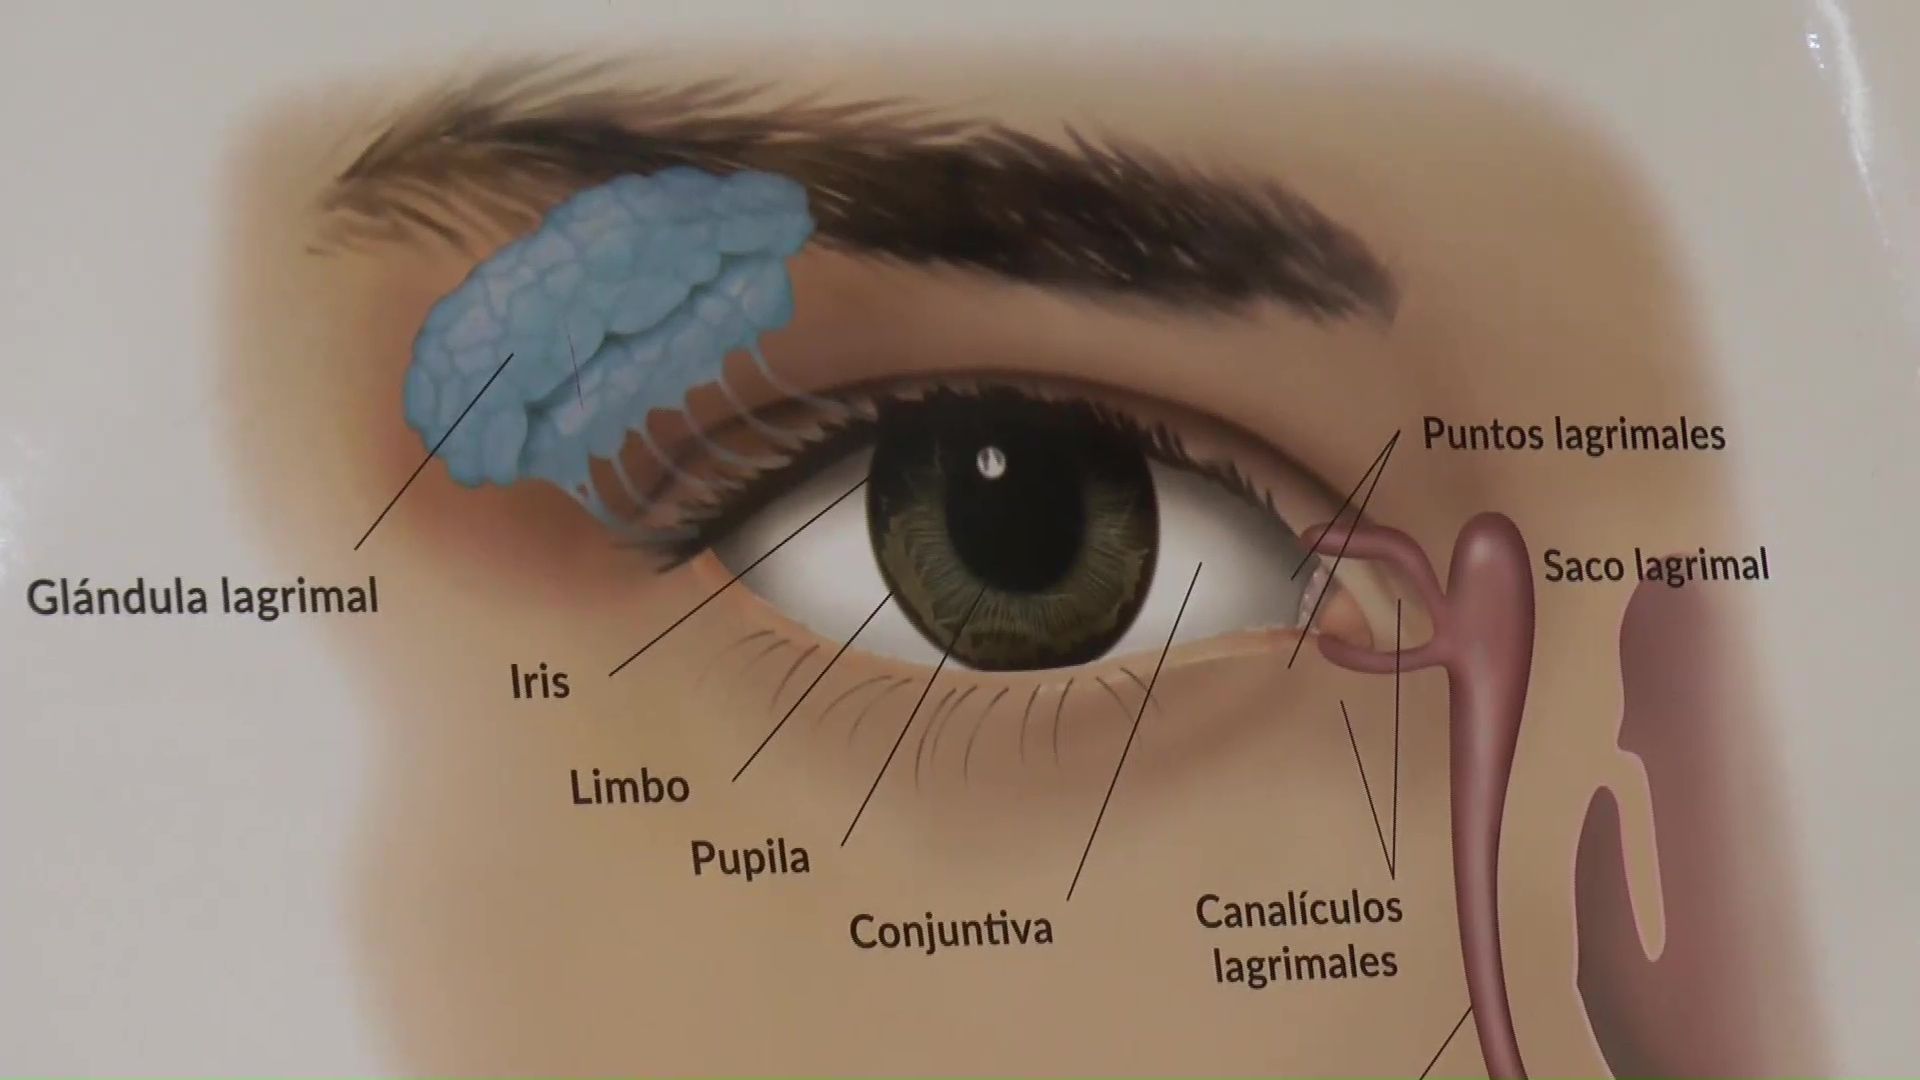 Consultas oftalmológicas: la mayoría de las atenciones en verano son por conjuntivitis